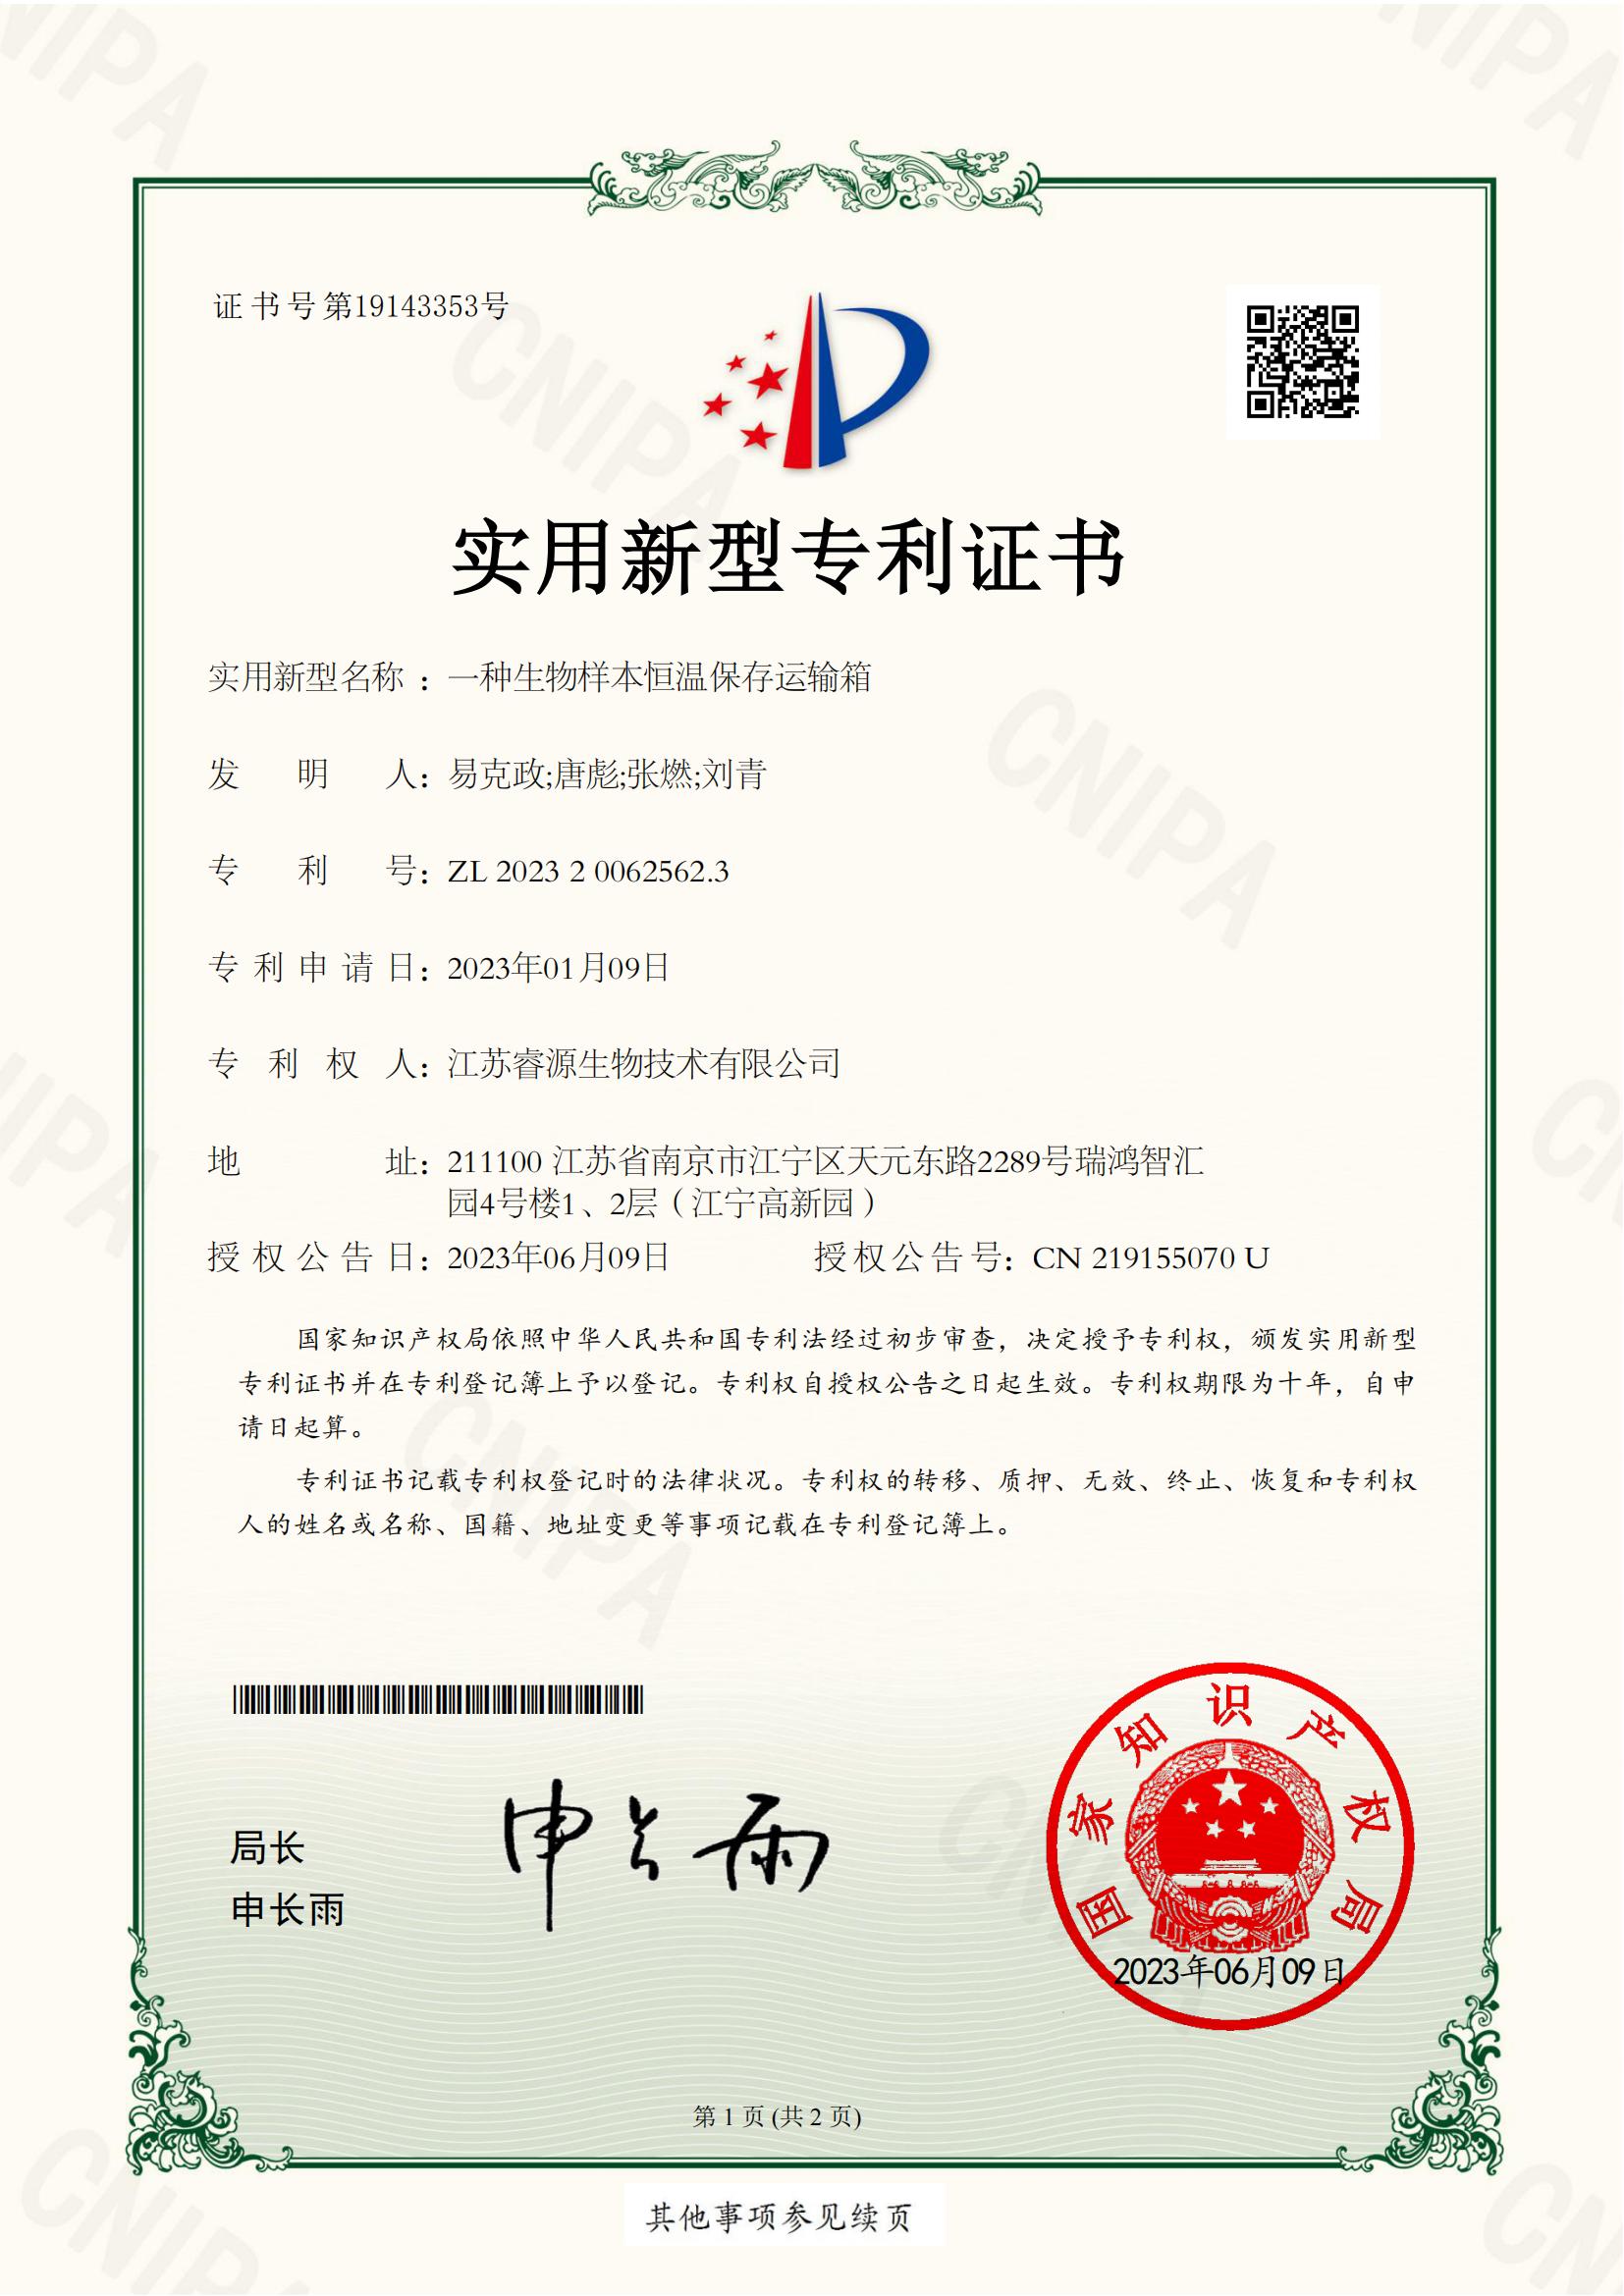 NJJIP2-20231-004文-实用新型专利证书_00